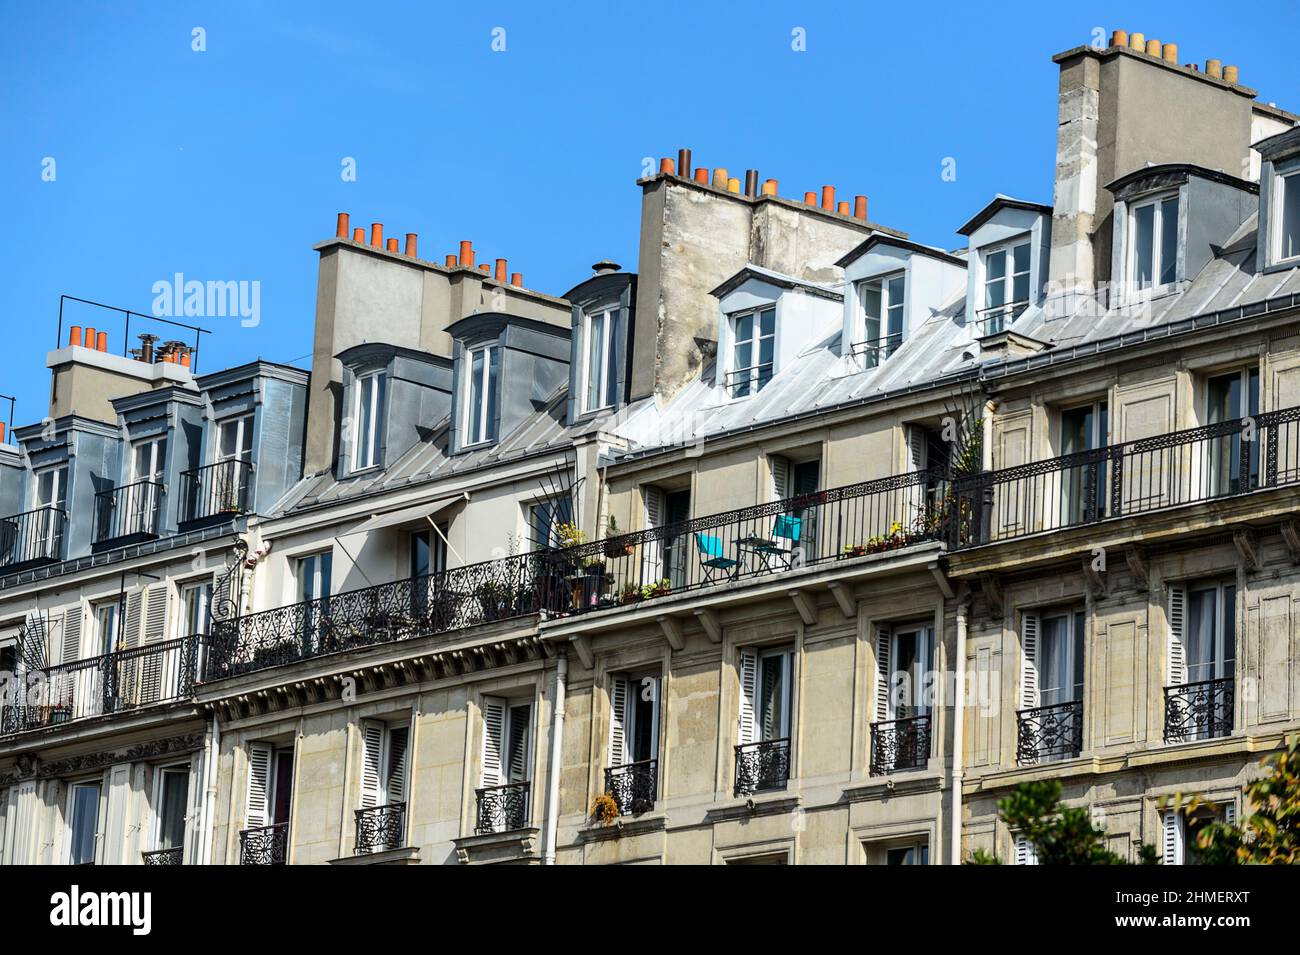 Evolution des prix de l'immobilier est a la baisse - Prix du metre carre en diminution  Housing in Paris - evolution of the square meter price of the Stock Photo